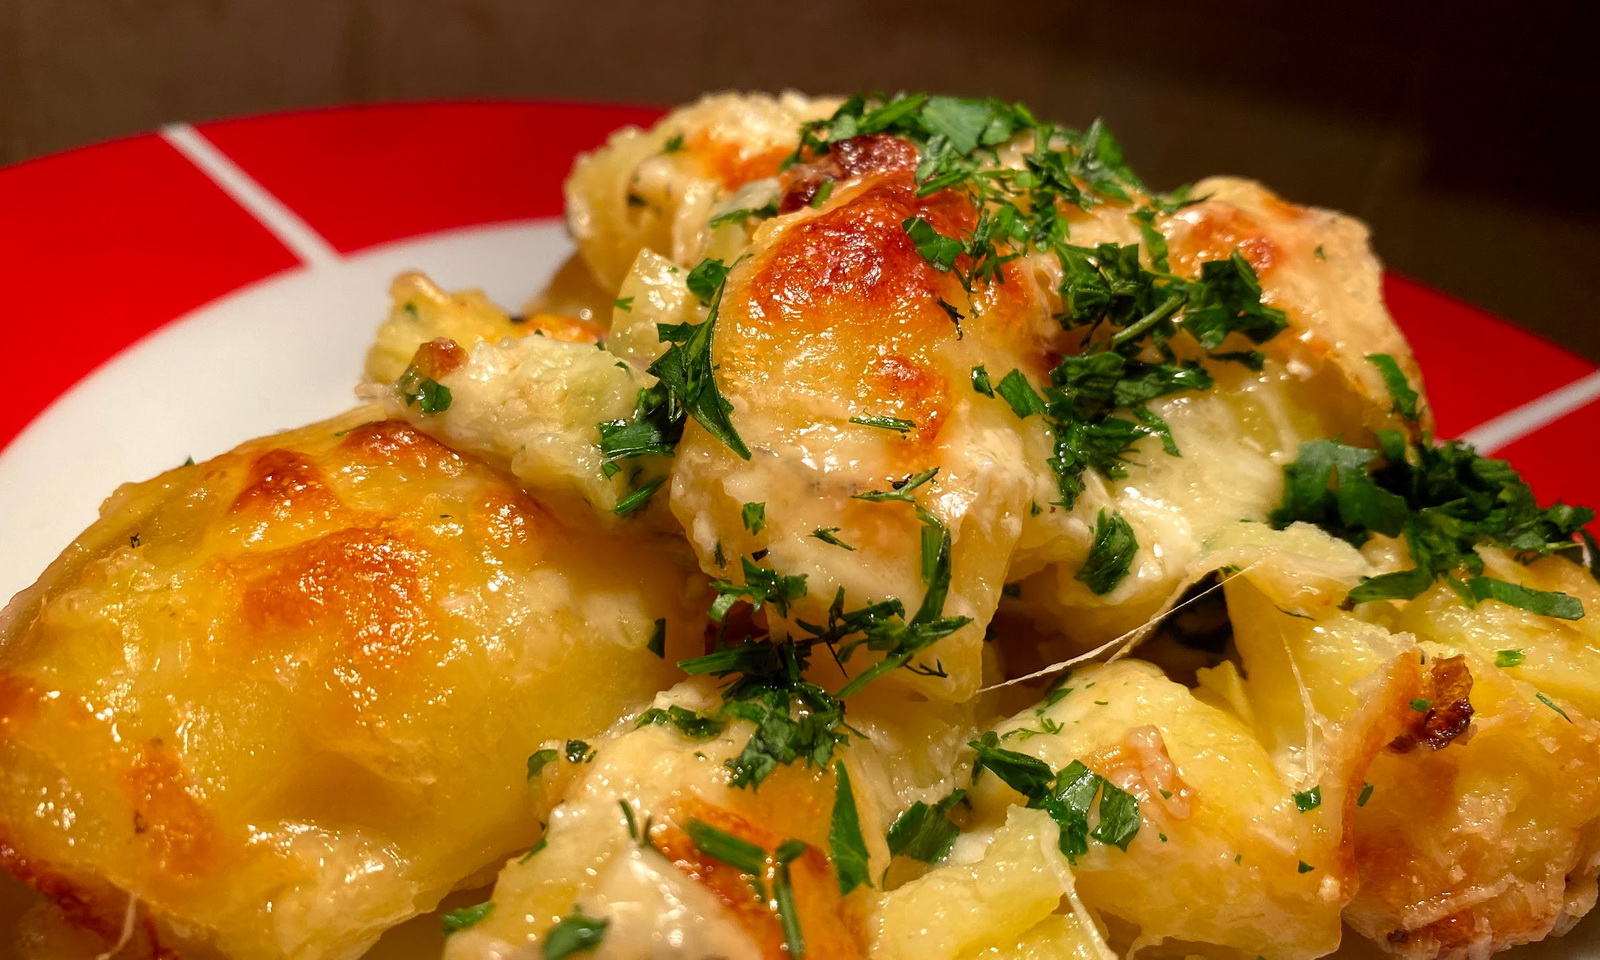 Kartoffel – Mâncare simplă de cartofi copți în cuptor cu 4 feluri de brânză